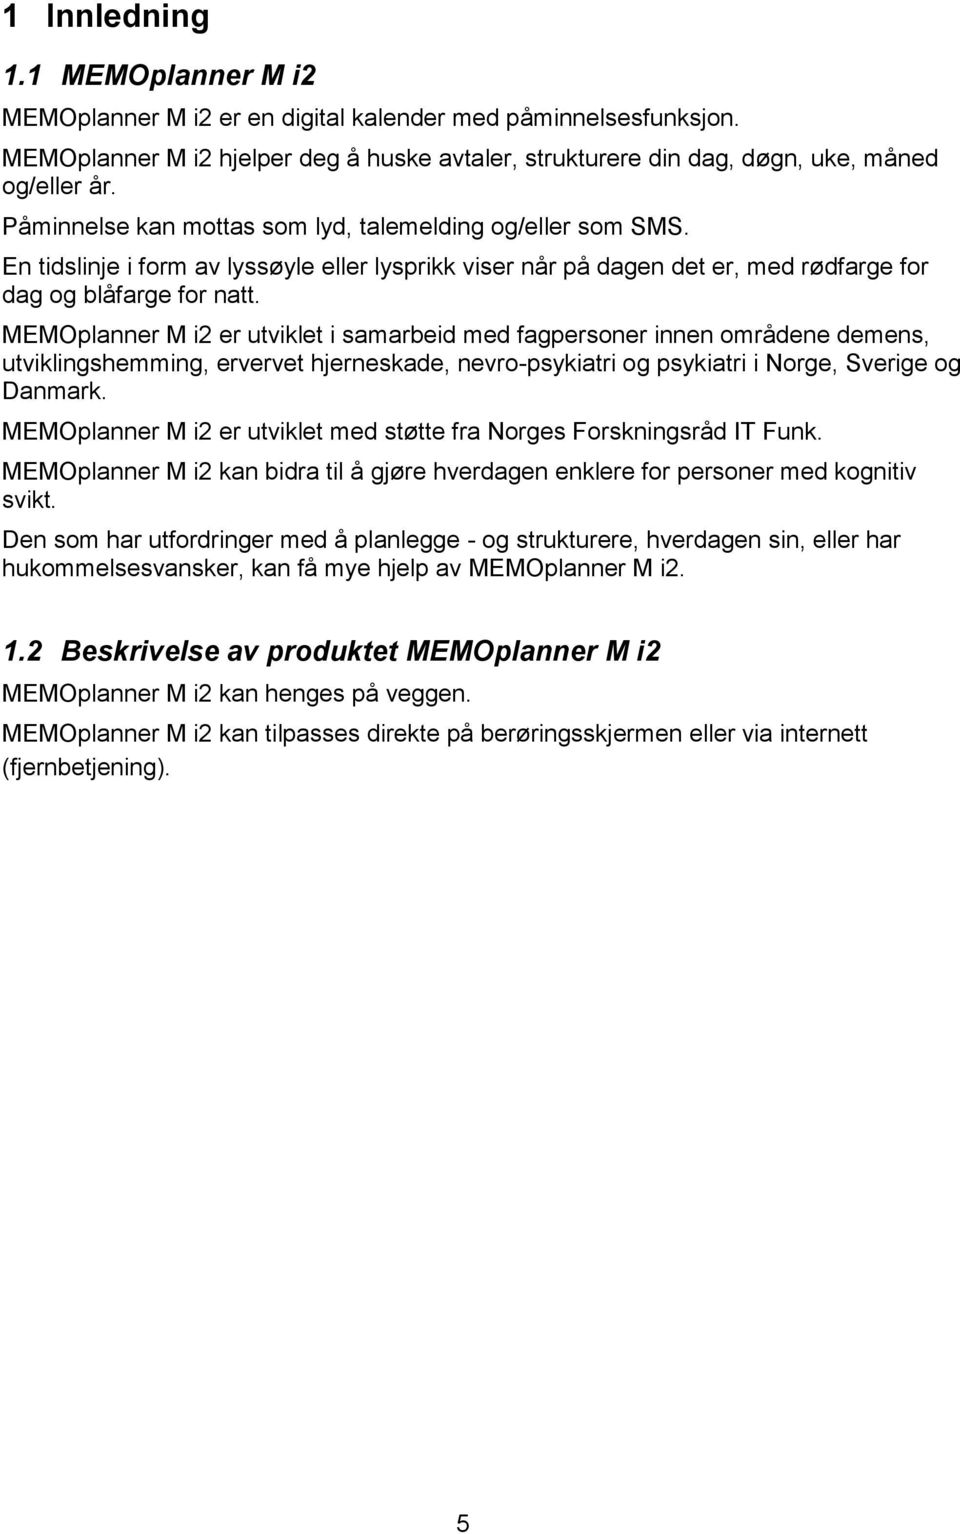 MEMOplanner M i2 er utviklet i samarbeid med fagpersoner innen områdene demens, utviklingshemming, ervervet hjerneskade, nevro-psykiatri og psykiatri i Norge, Sverige og Danmark.